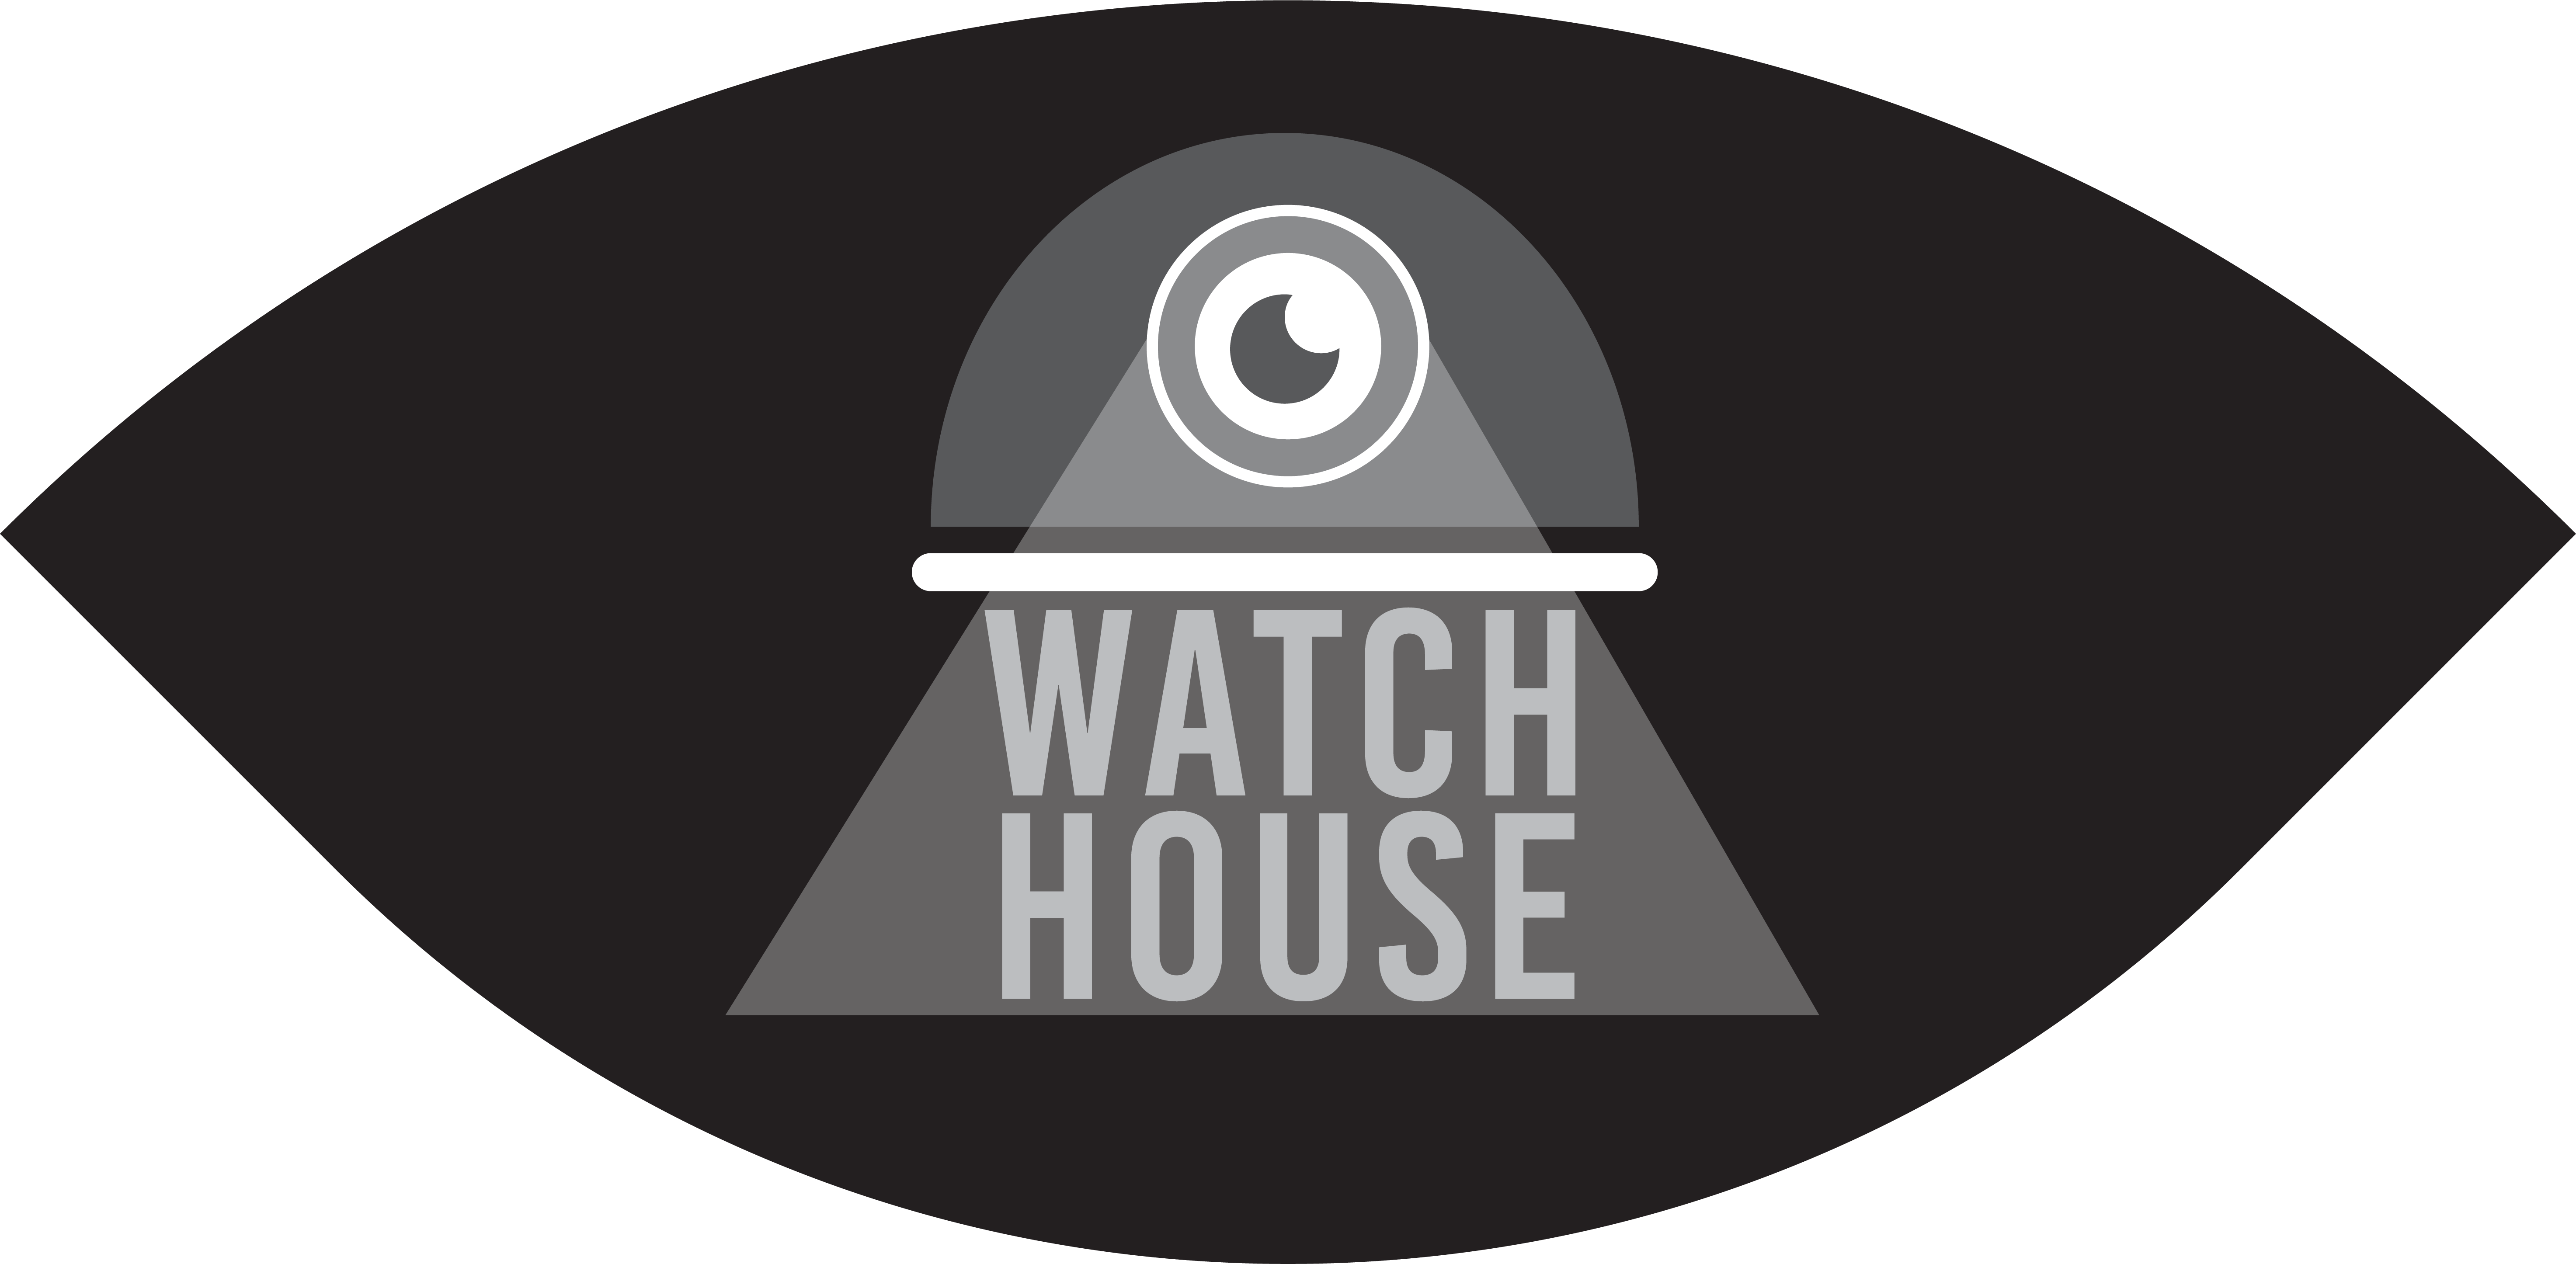 Logo Watch House by Rifqi Fadhlurrahman Halim on Dribbble